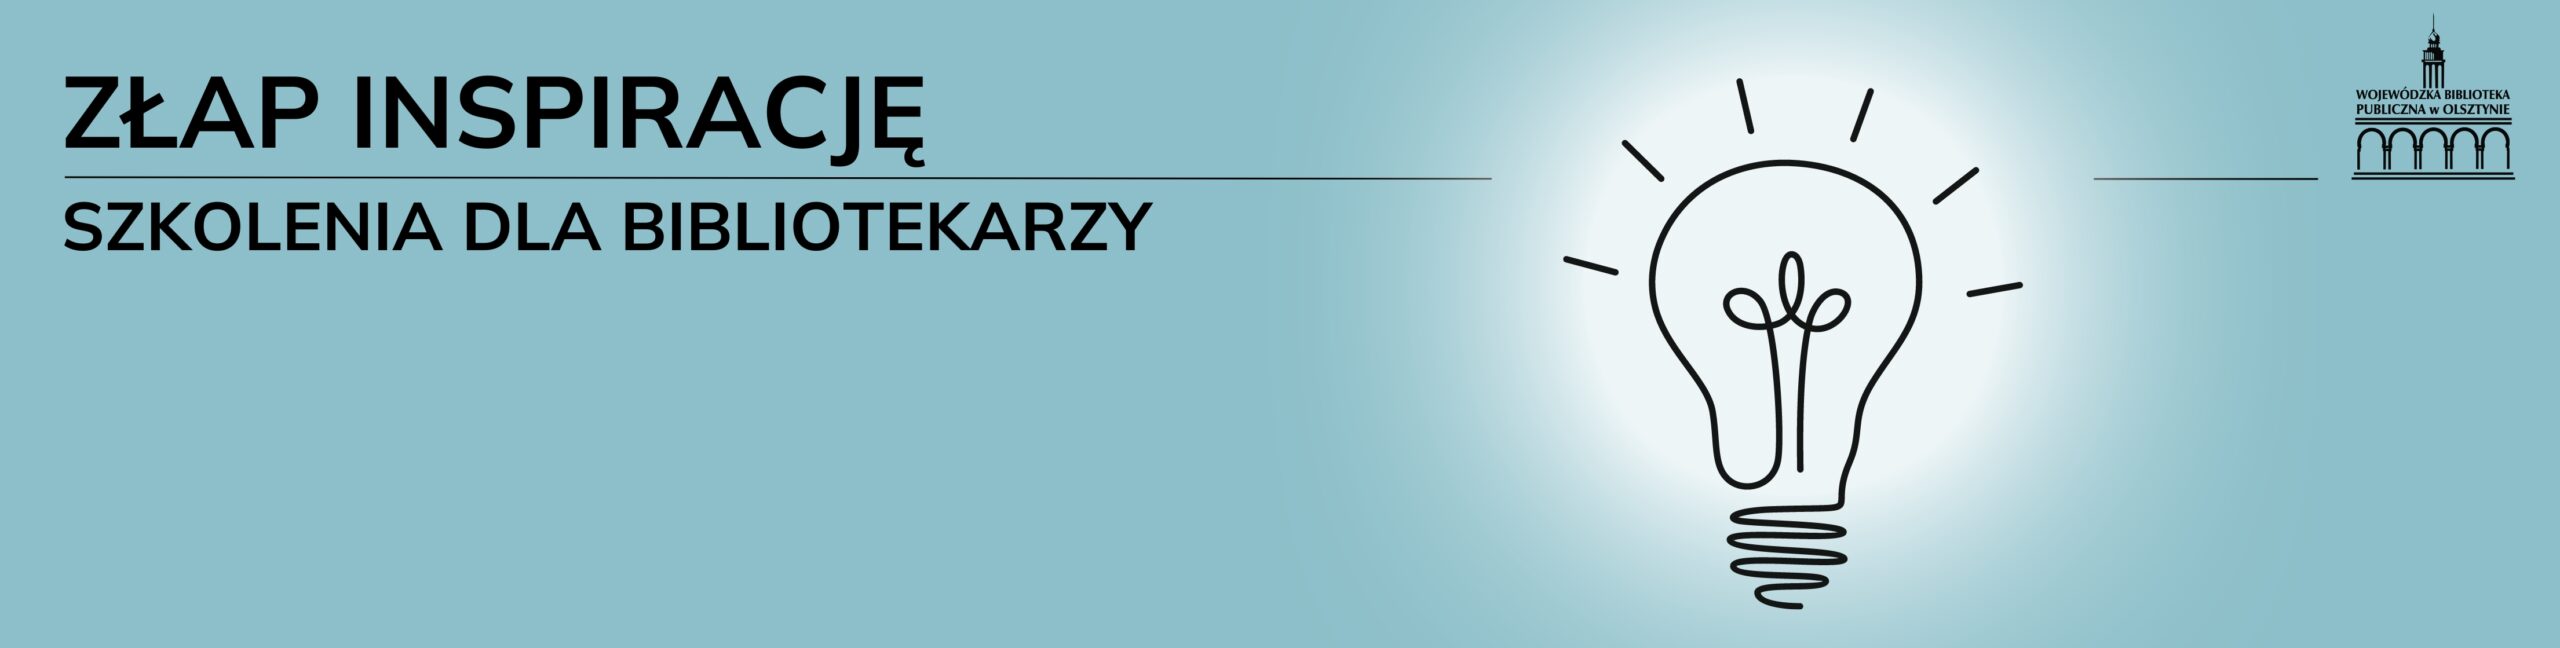 Szaro-niebieska grafika przedstawiająca: rozświetloną żarówkę, logo Wojewódzkiej Biblioteki Publicznej oraz napis: Złap inspirację - szkolenia dla bibliotekarzy.